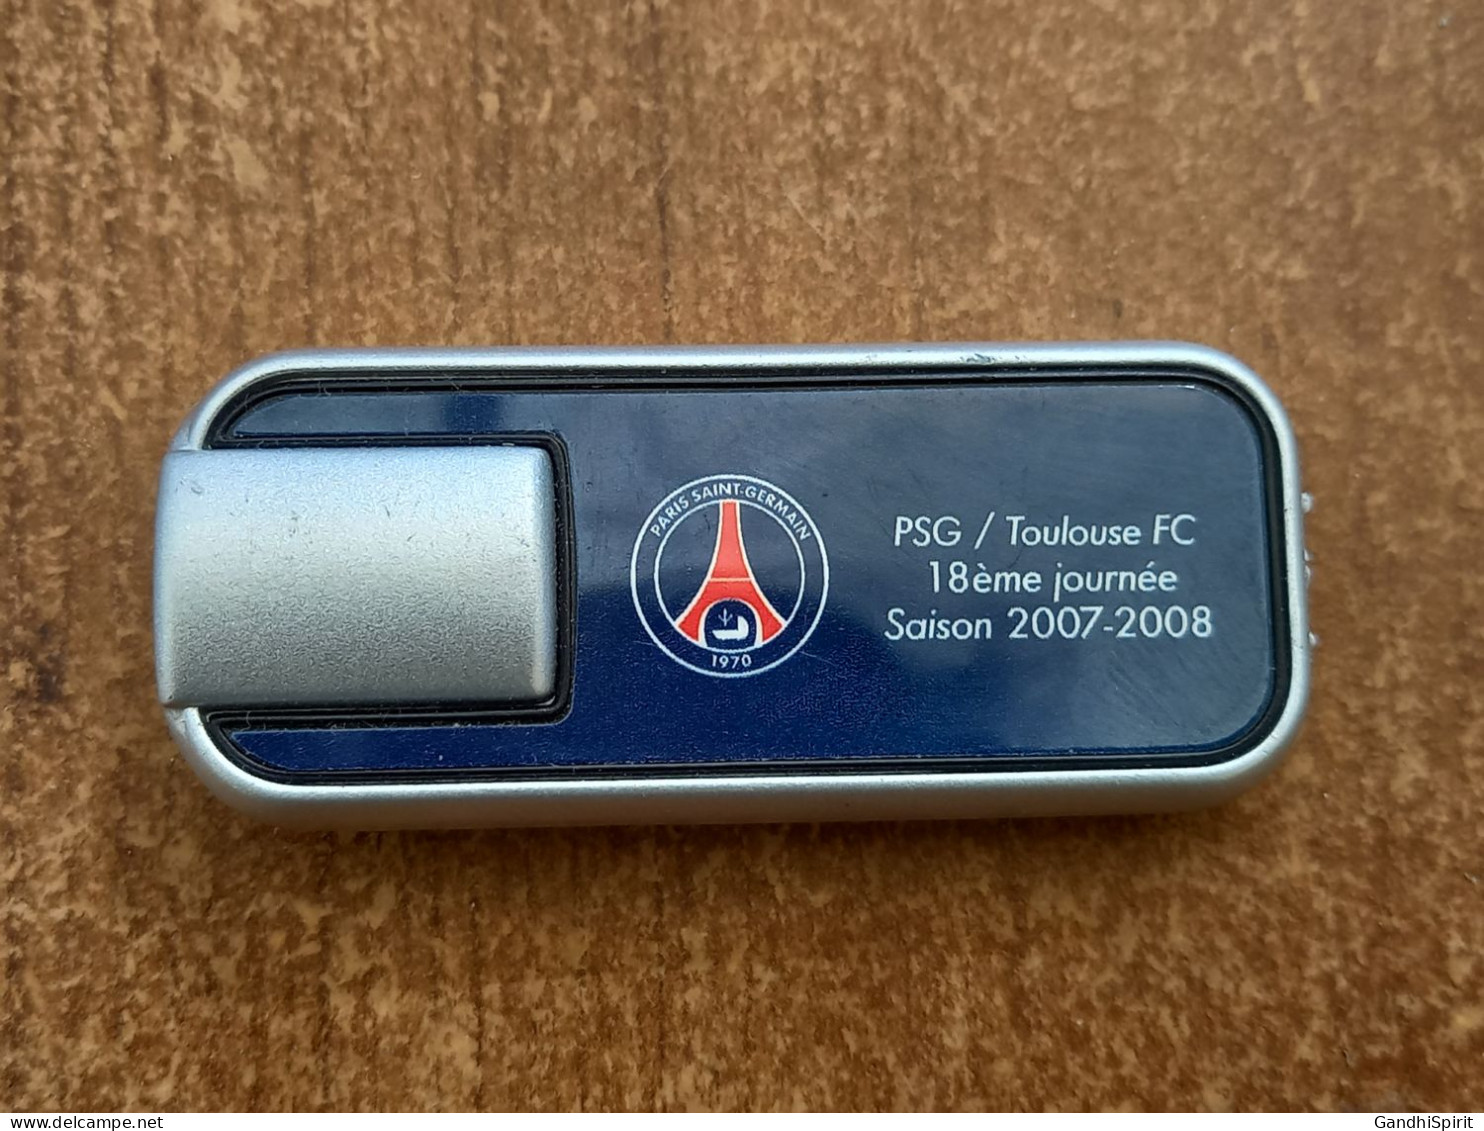 PSG Paris Saint Germain / Toulouse FC 2007-2008 Laser Ou Petite Lampe De Poche - Abbigliamento, Souvenirs & Varie